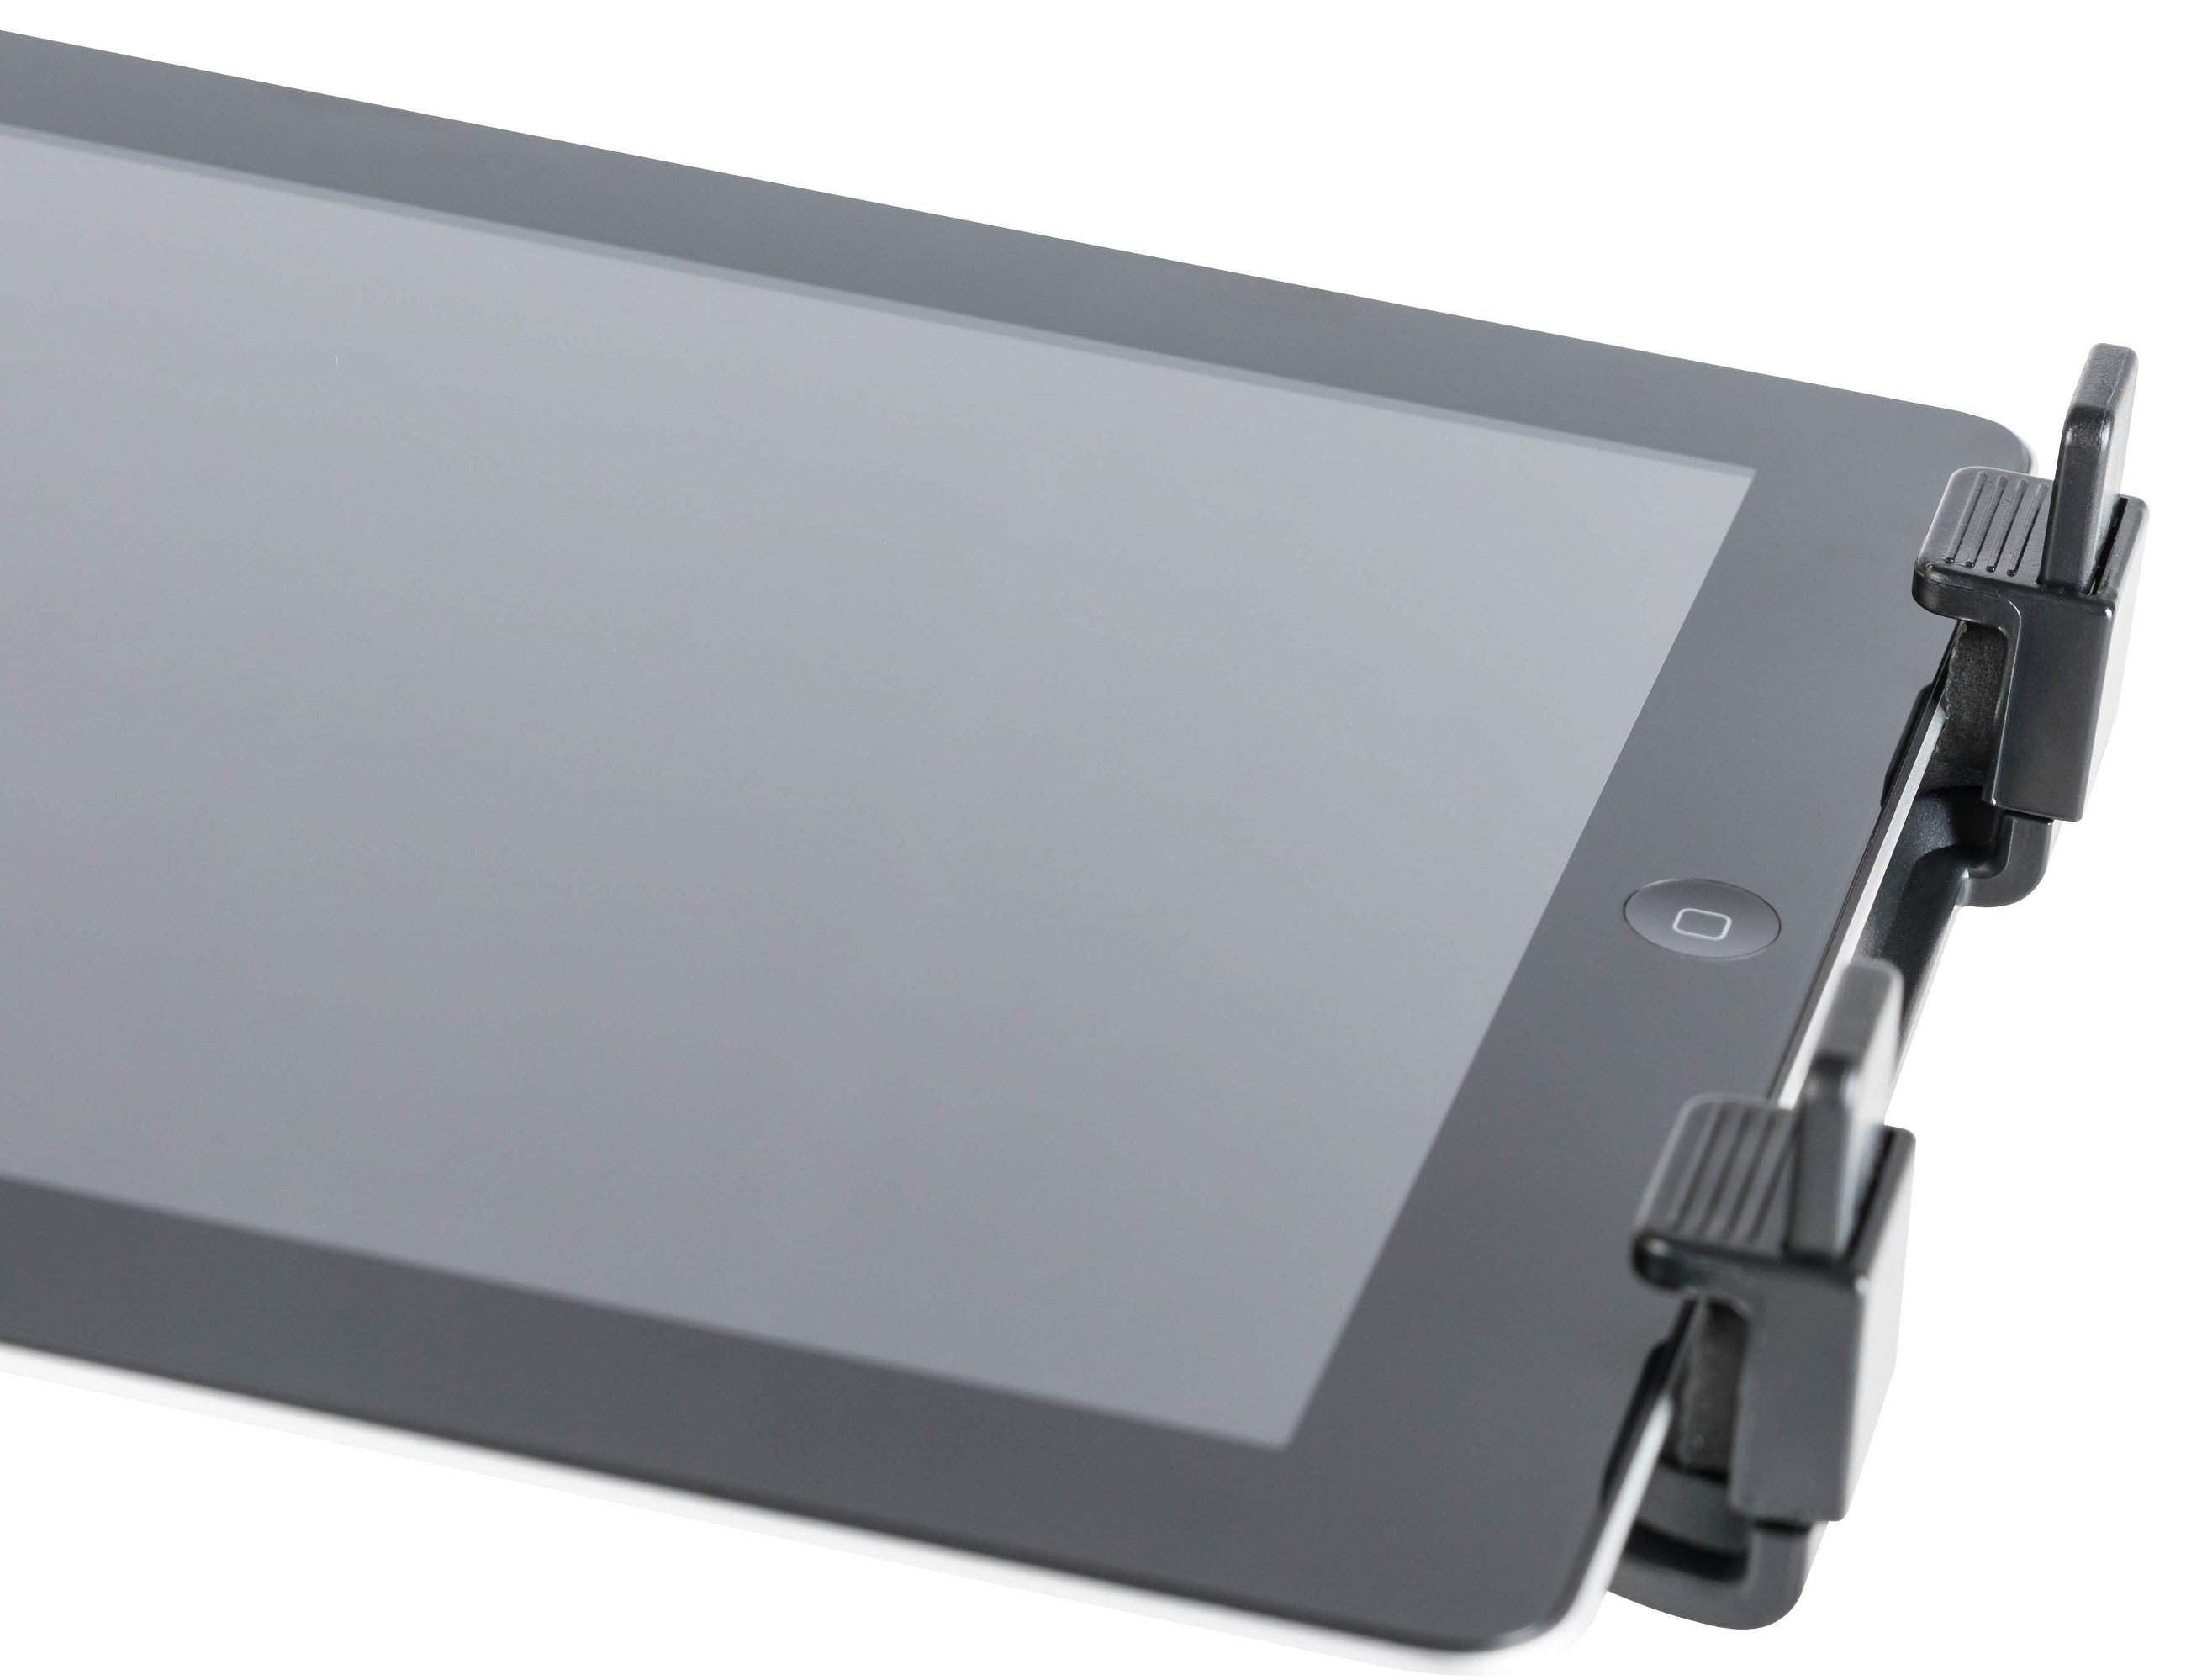 Premium PKW Tablet Halterung für Kopfstütze passend bis 10 Zoll Tablets